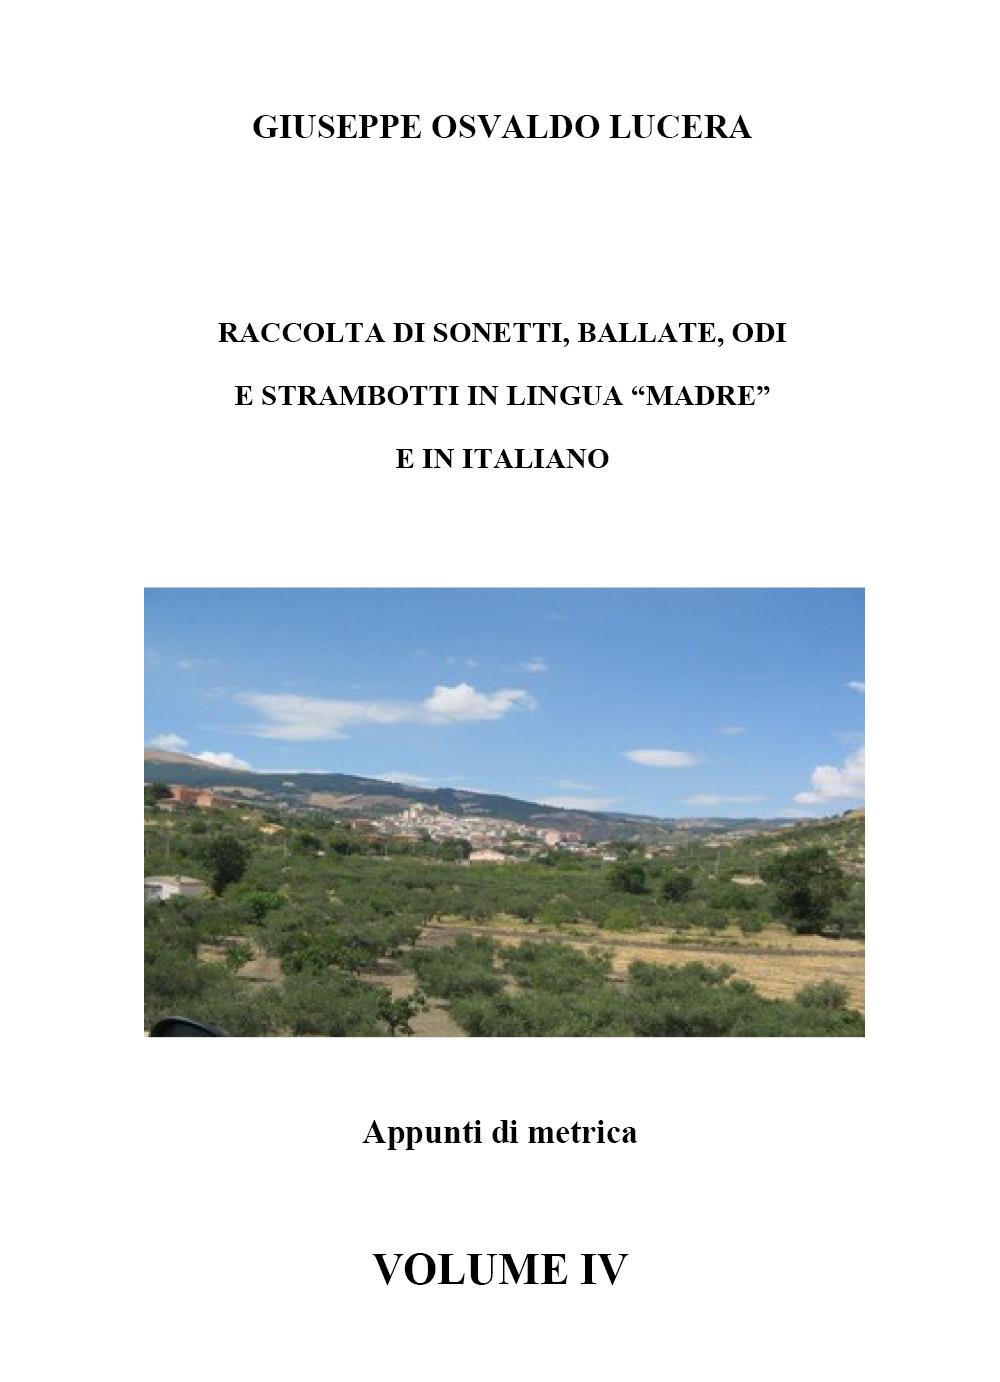 Raccolta di sonetti, ballate, odi e strambotti in lingua madre e in italiano. Vol. IV